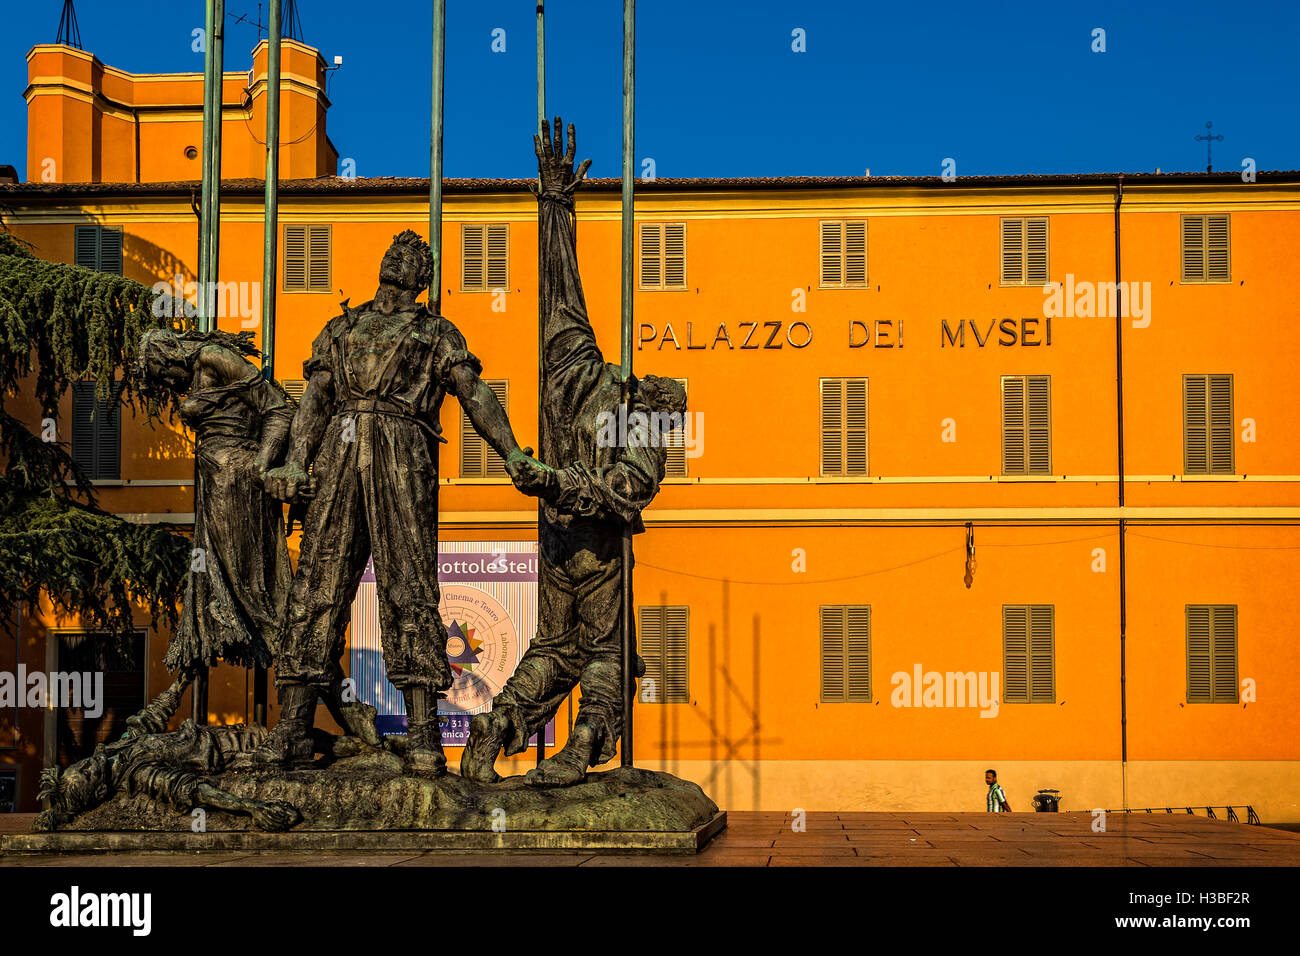 Italien-Emilia-Romagna-Reggio Emilia Piazza dei Teatri - Piazza della Vittoria Musei Civici und Krieg-Denkmal-Widerstand Stockfoto